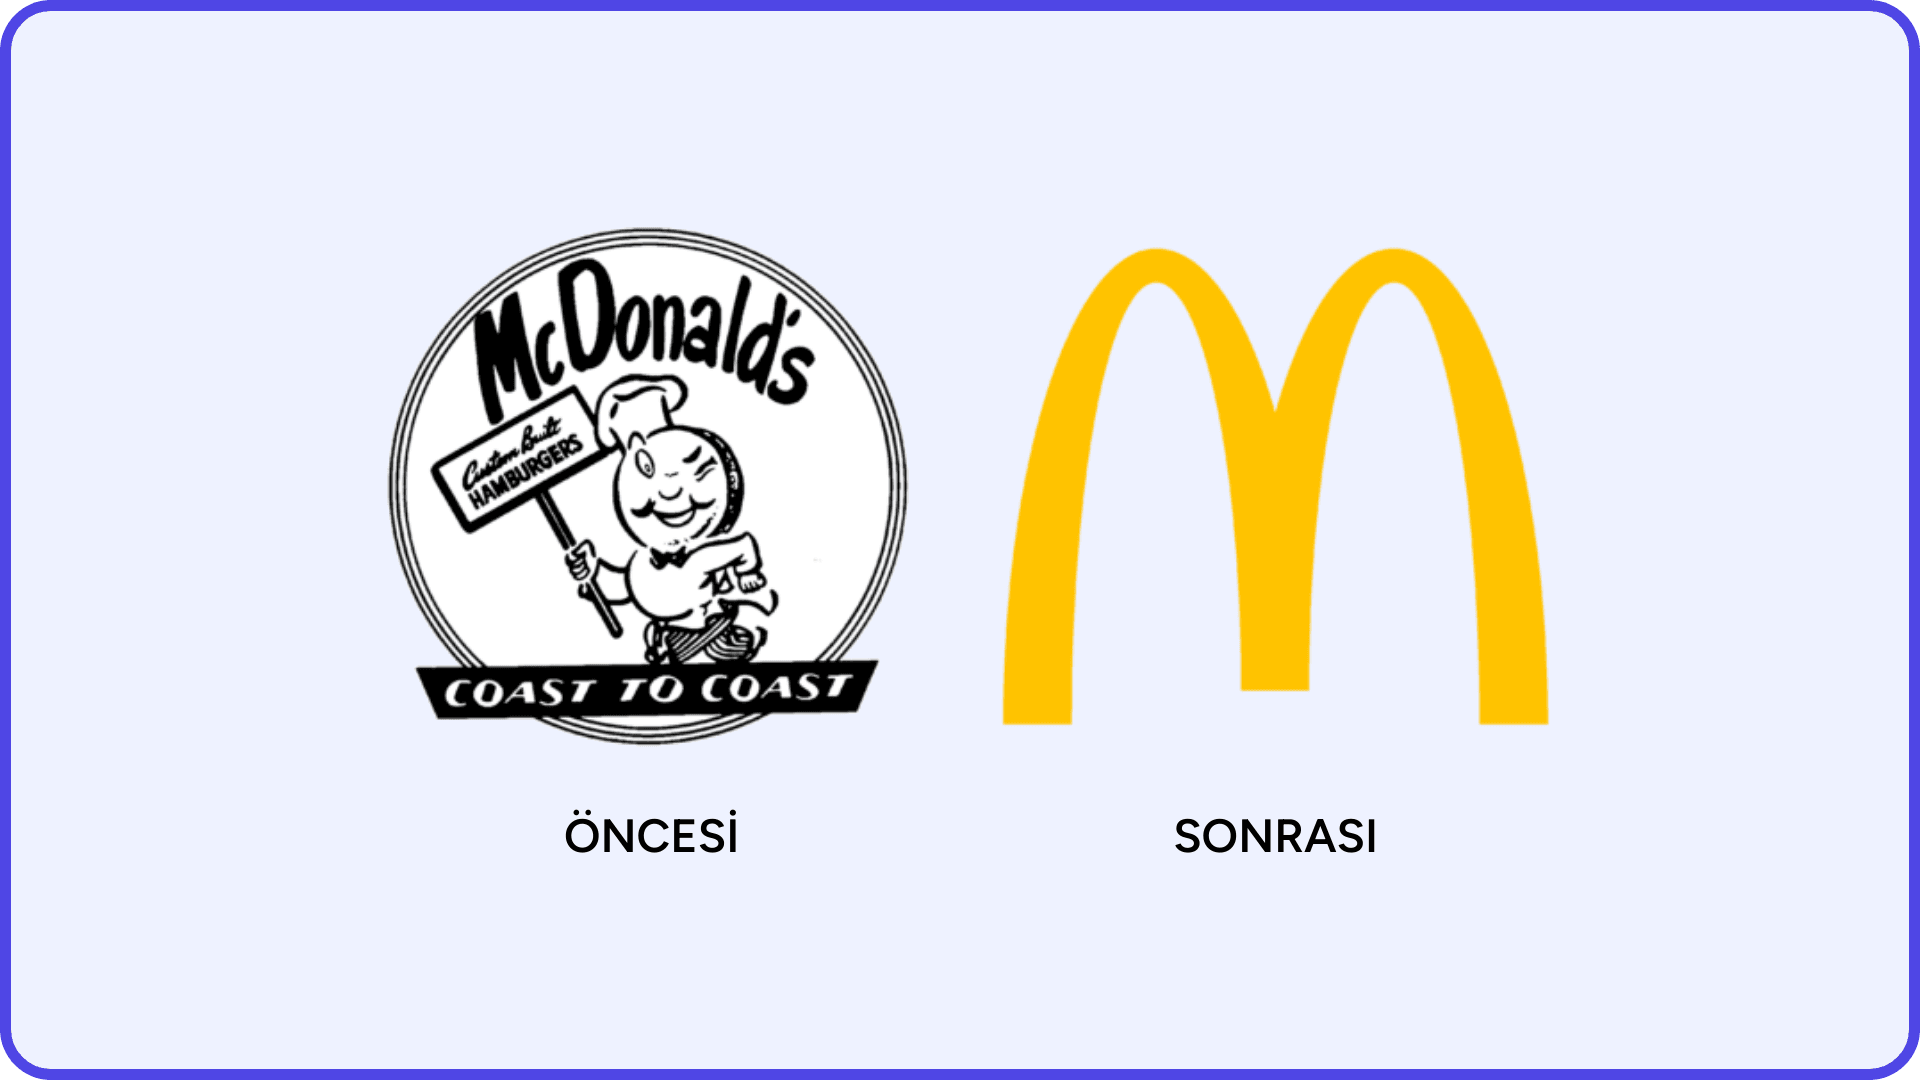 McDonald's logosunun önceki ve sonraki hali. Uluslulararasılaştırma hedefiyle değişiklik yapılmış.